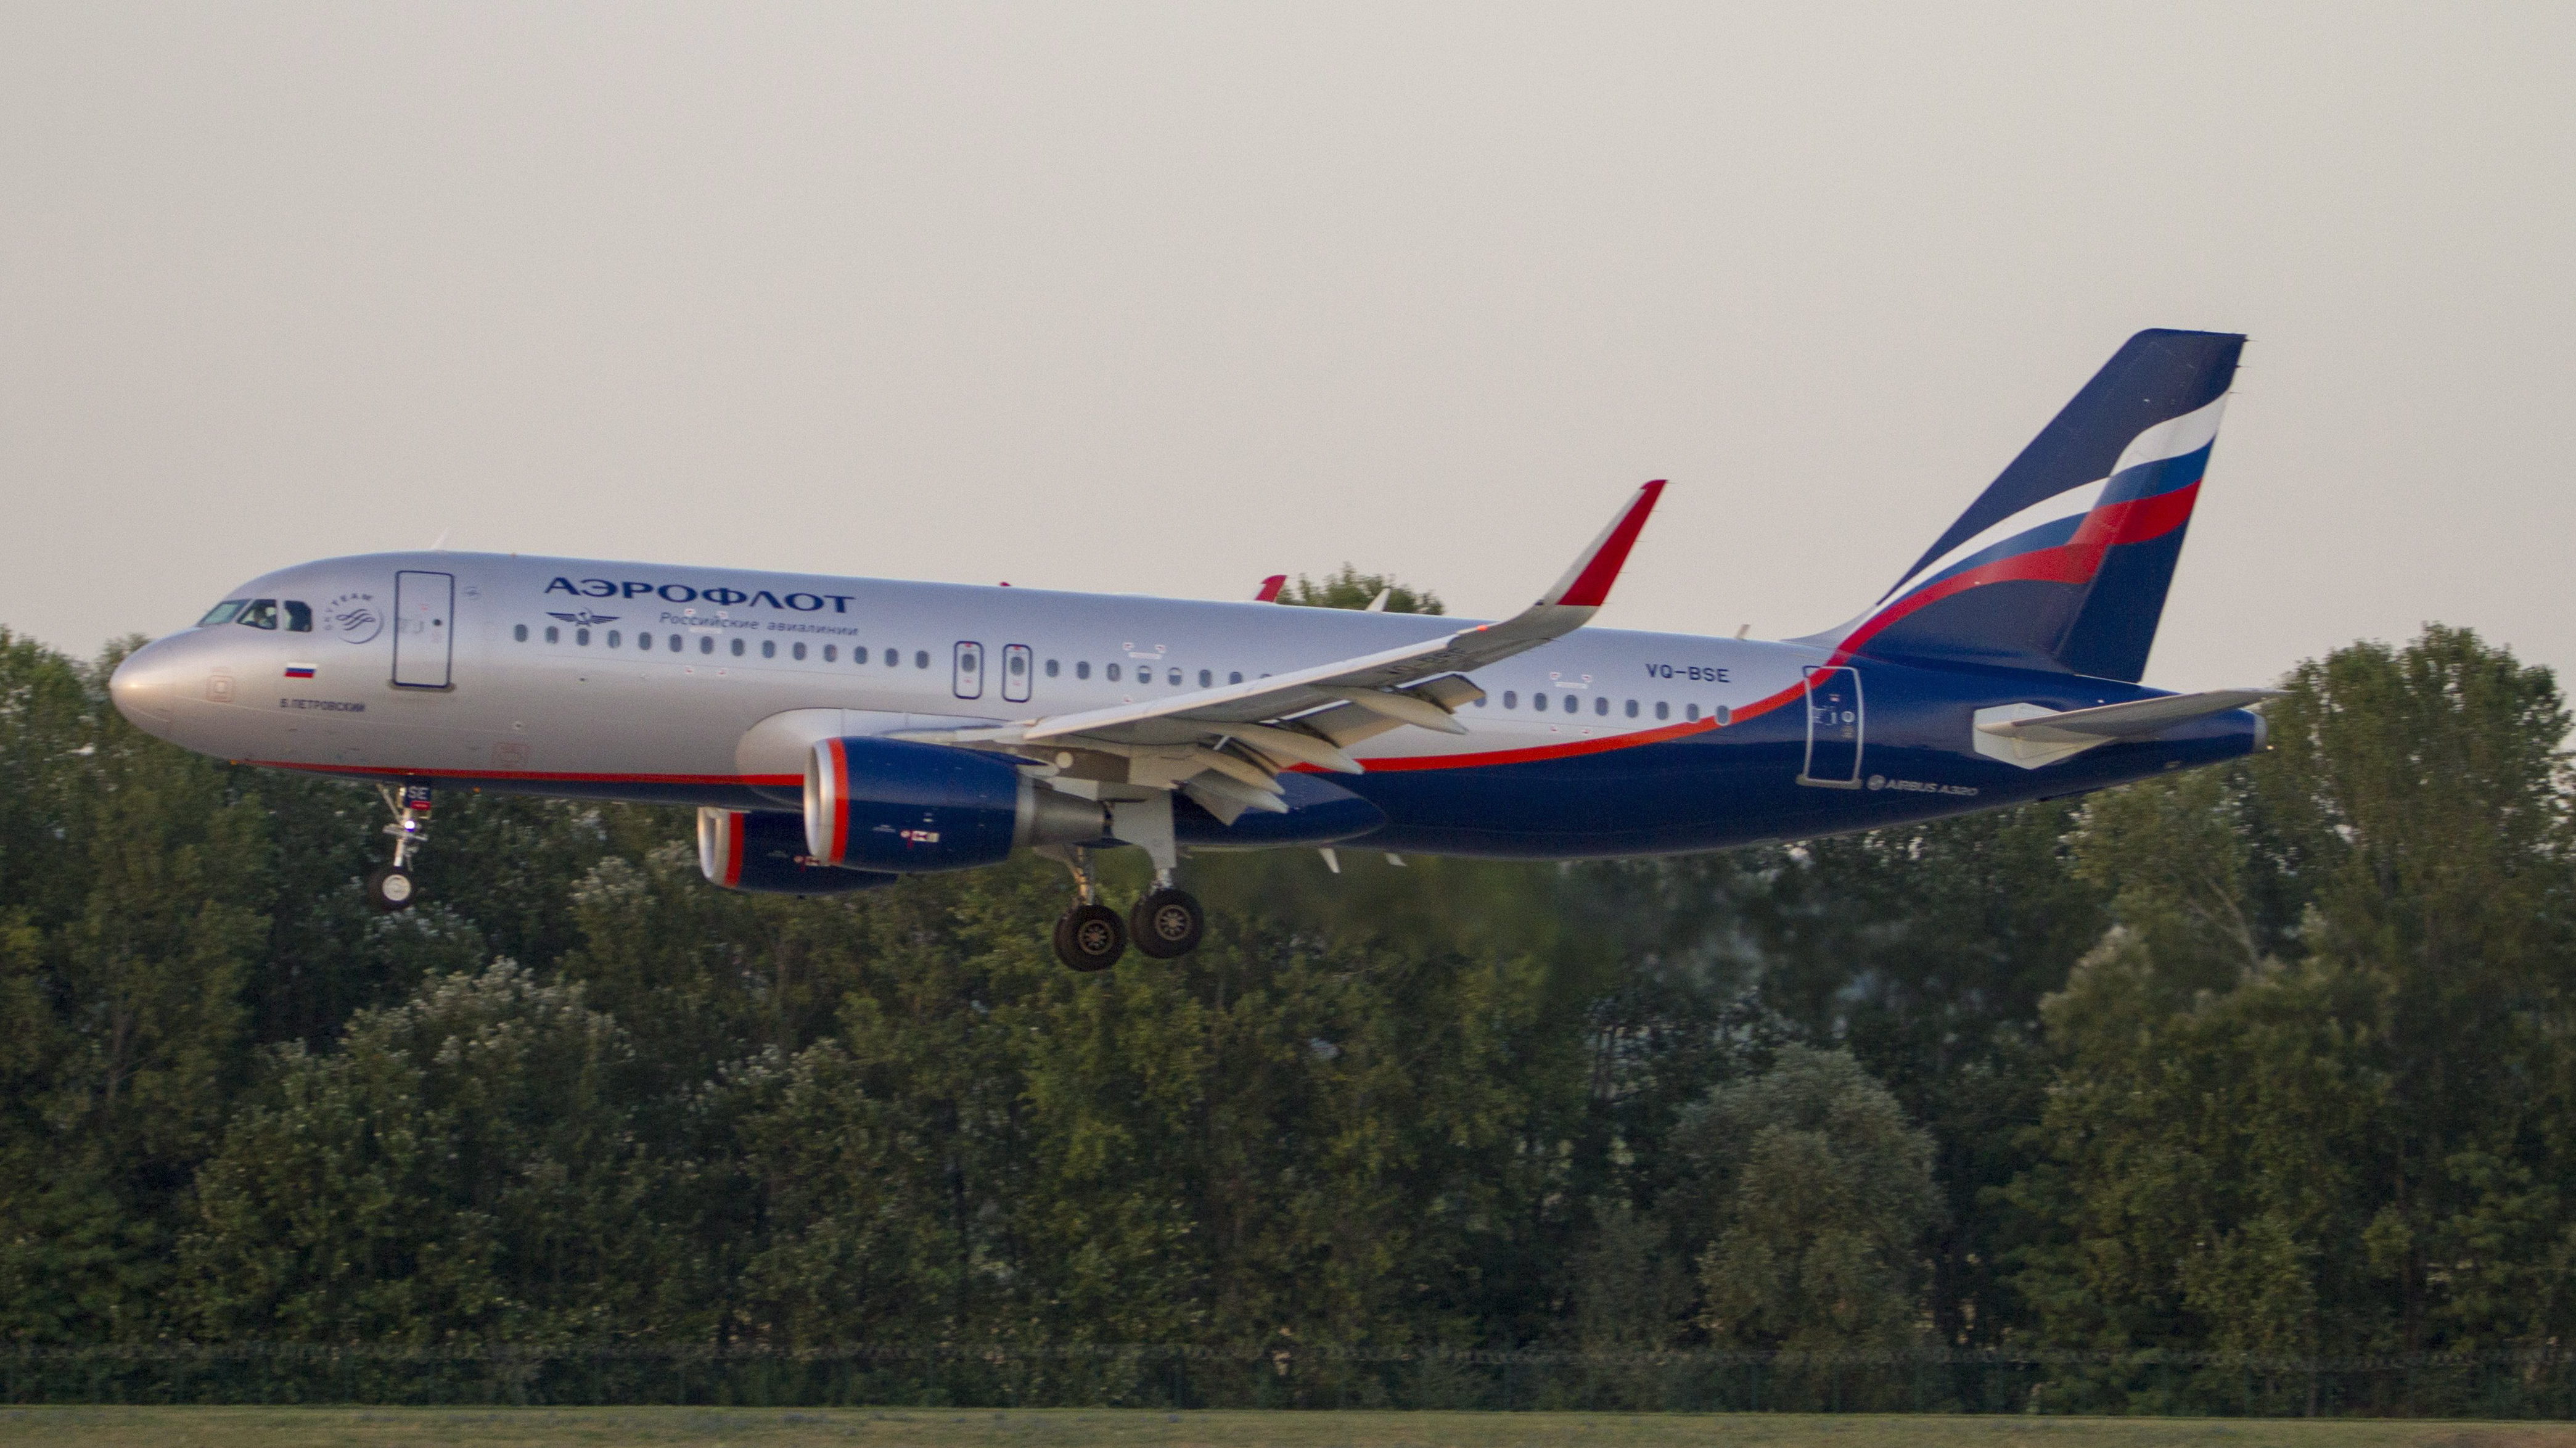 New York-i landolás után evakuálták az orosz légitársaság gépének 250 utasát